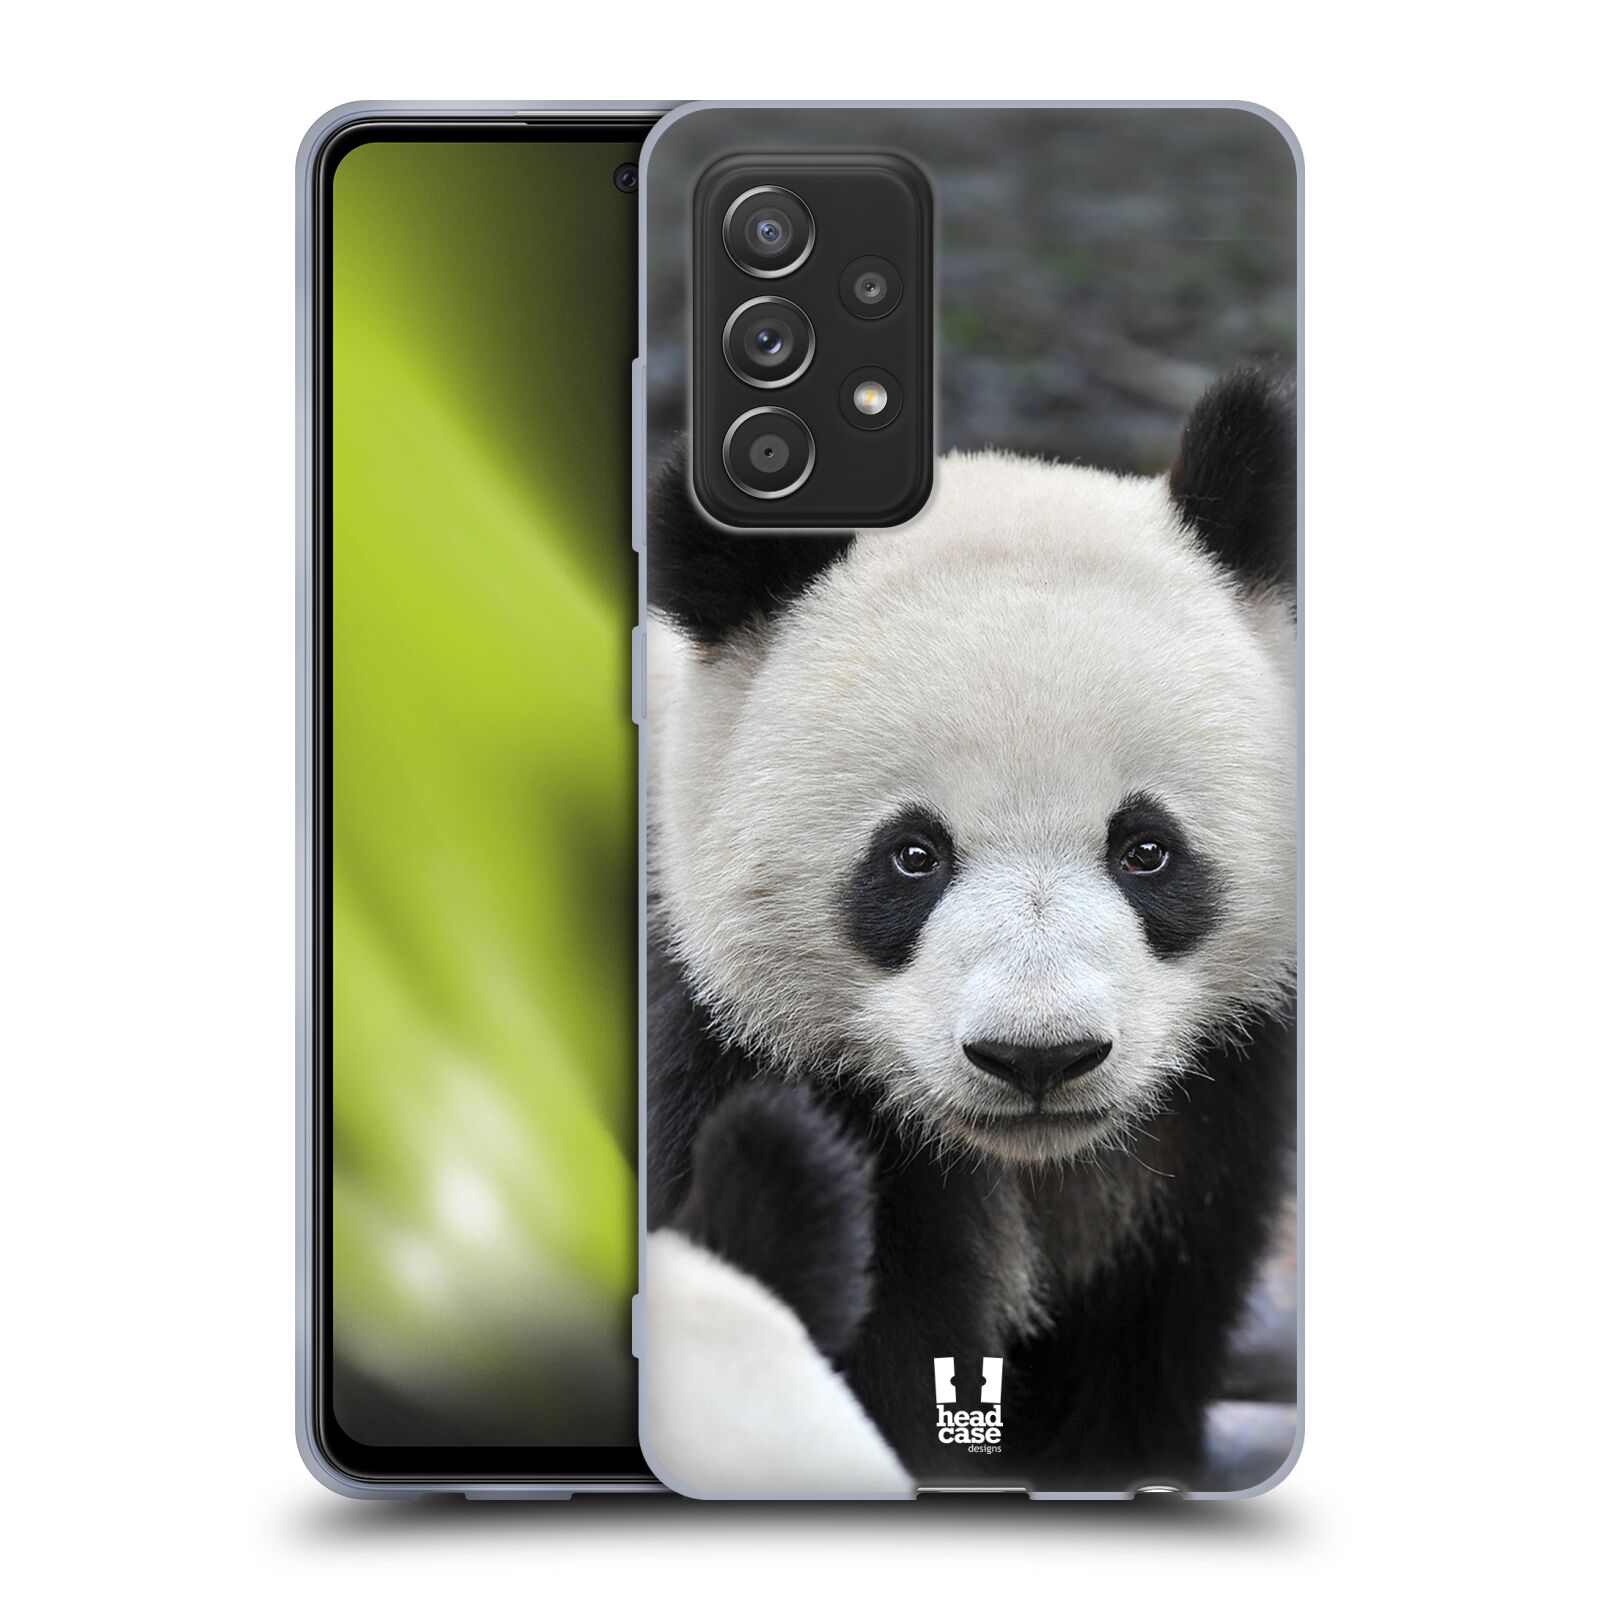 Plastový obal HEAD CASE na mobil Samsung Galaxy A52 / A52 5G / A52s 5G vzor Divočina, Divoký život a zvířata foto MEDVĚD PANDA